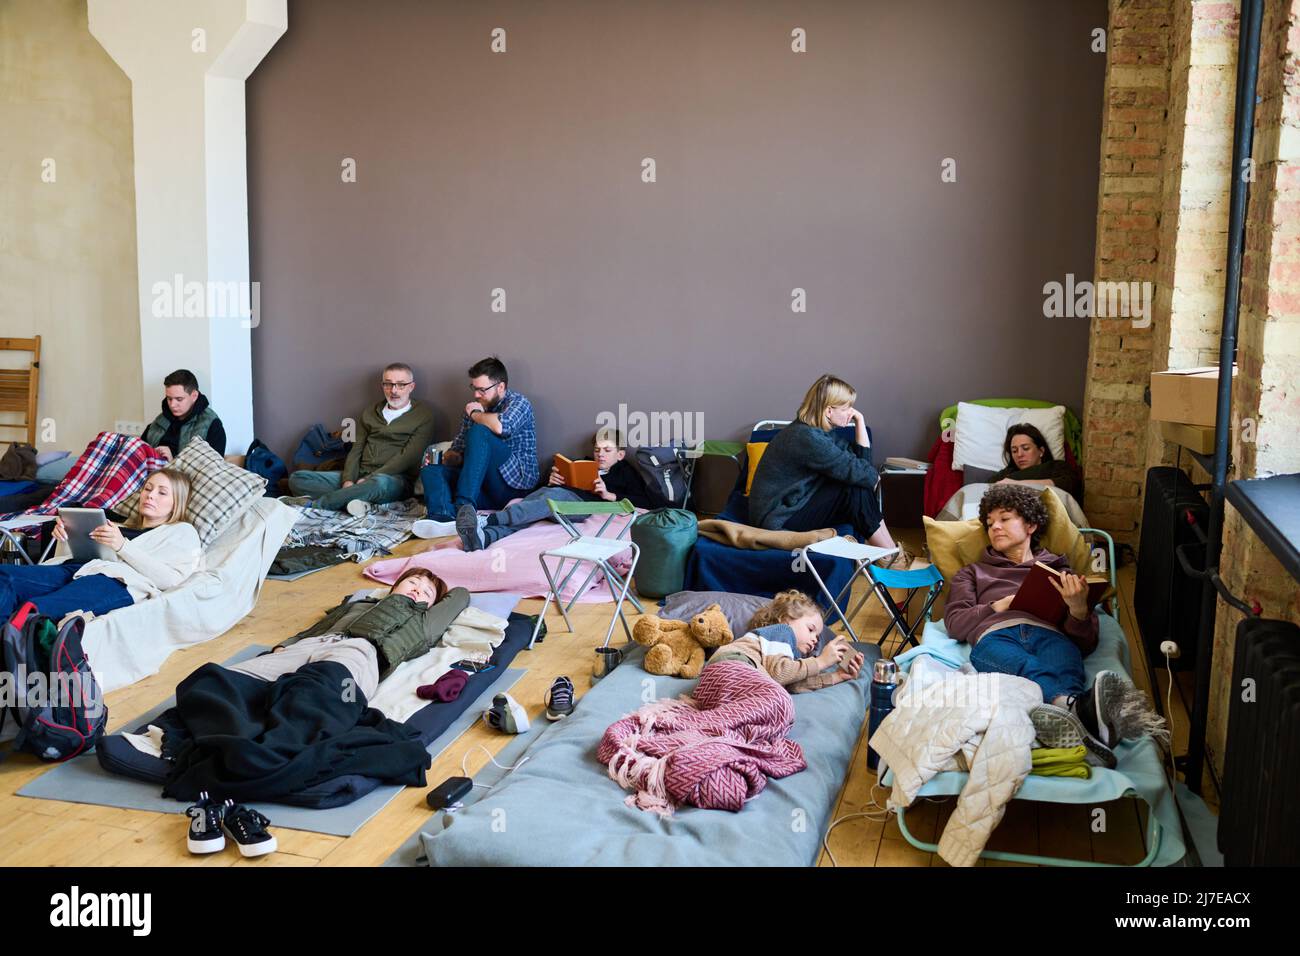 Gruppo di rifugiati che utilizzano gadget mobili, che parlano e dormono mentre si riposano su cuccette e materassi in una camera spaziosa Foto Stock